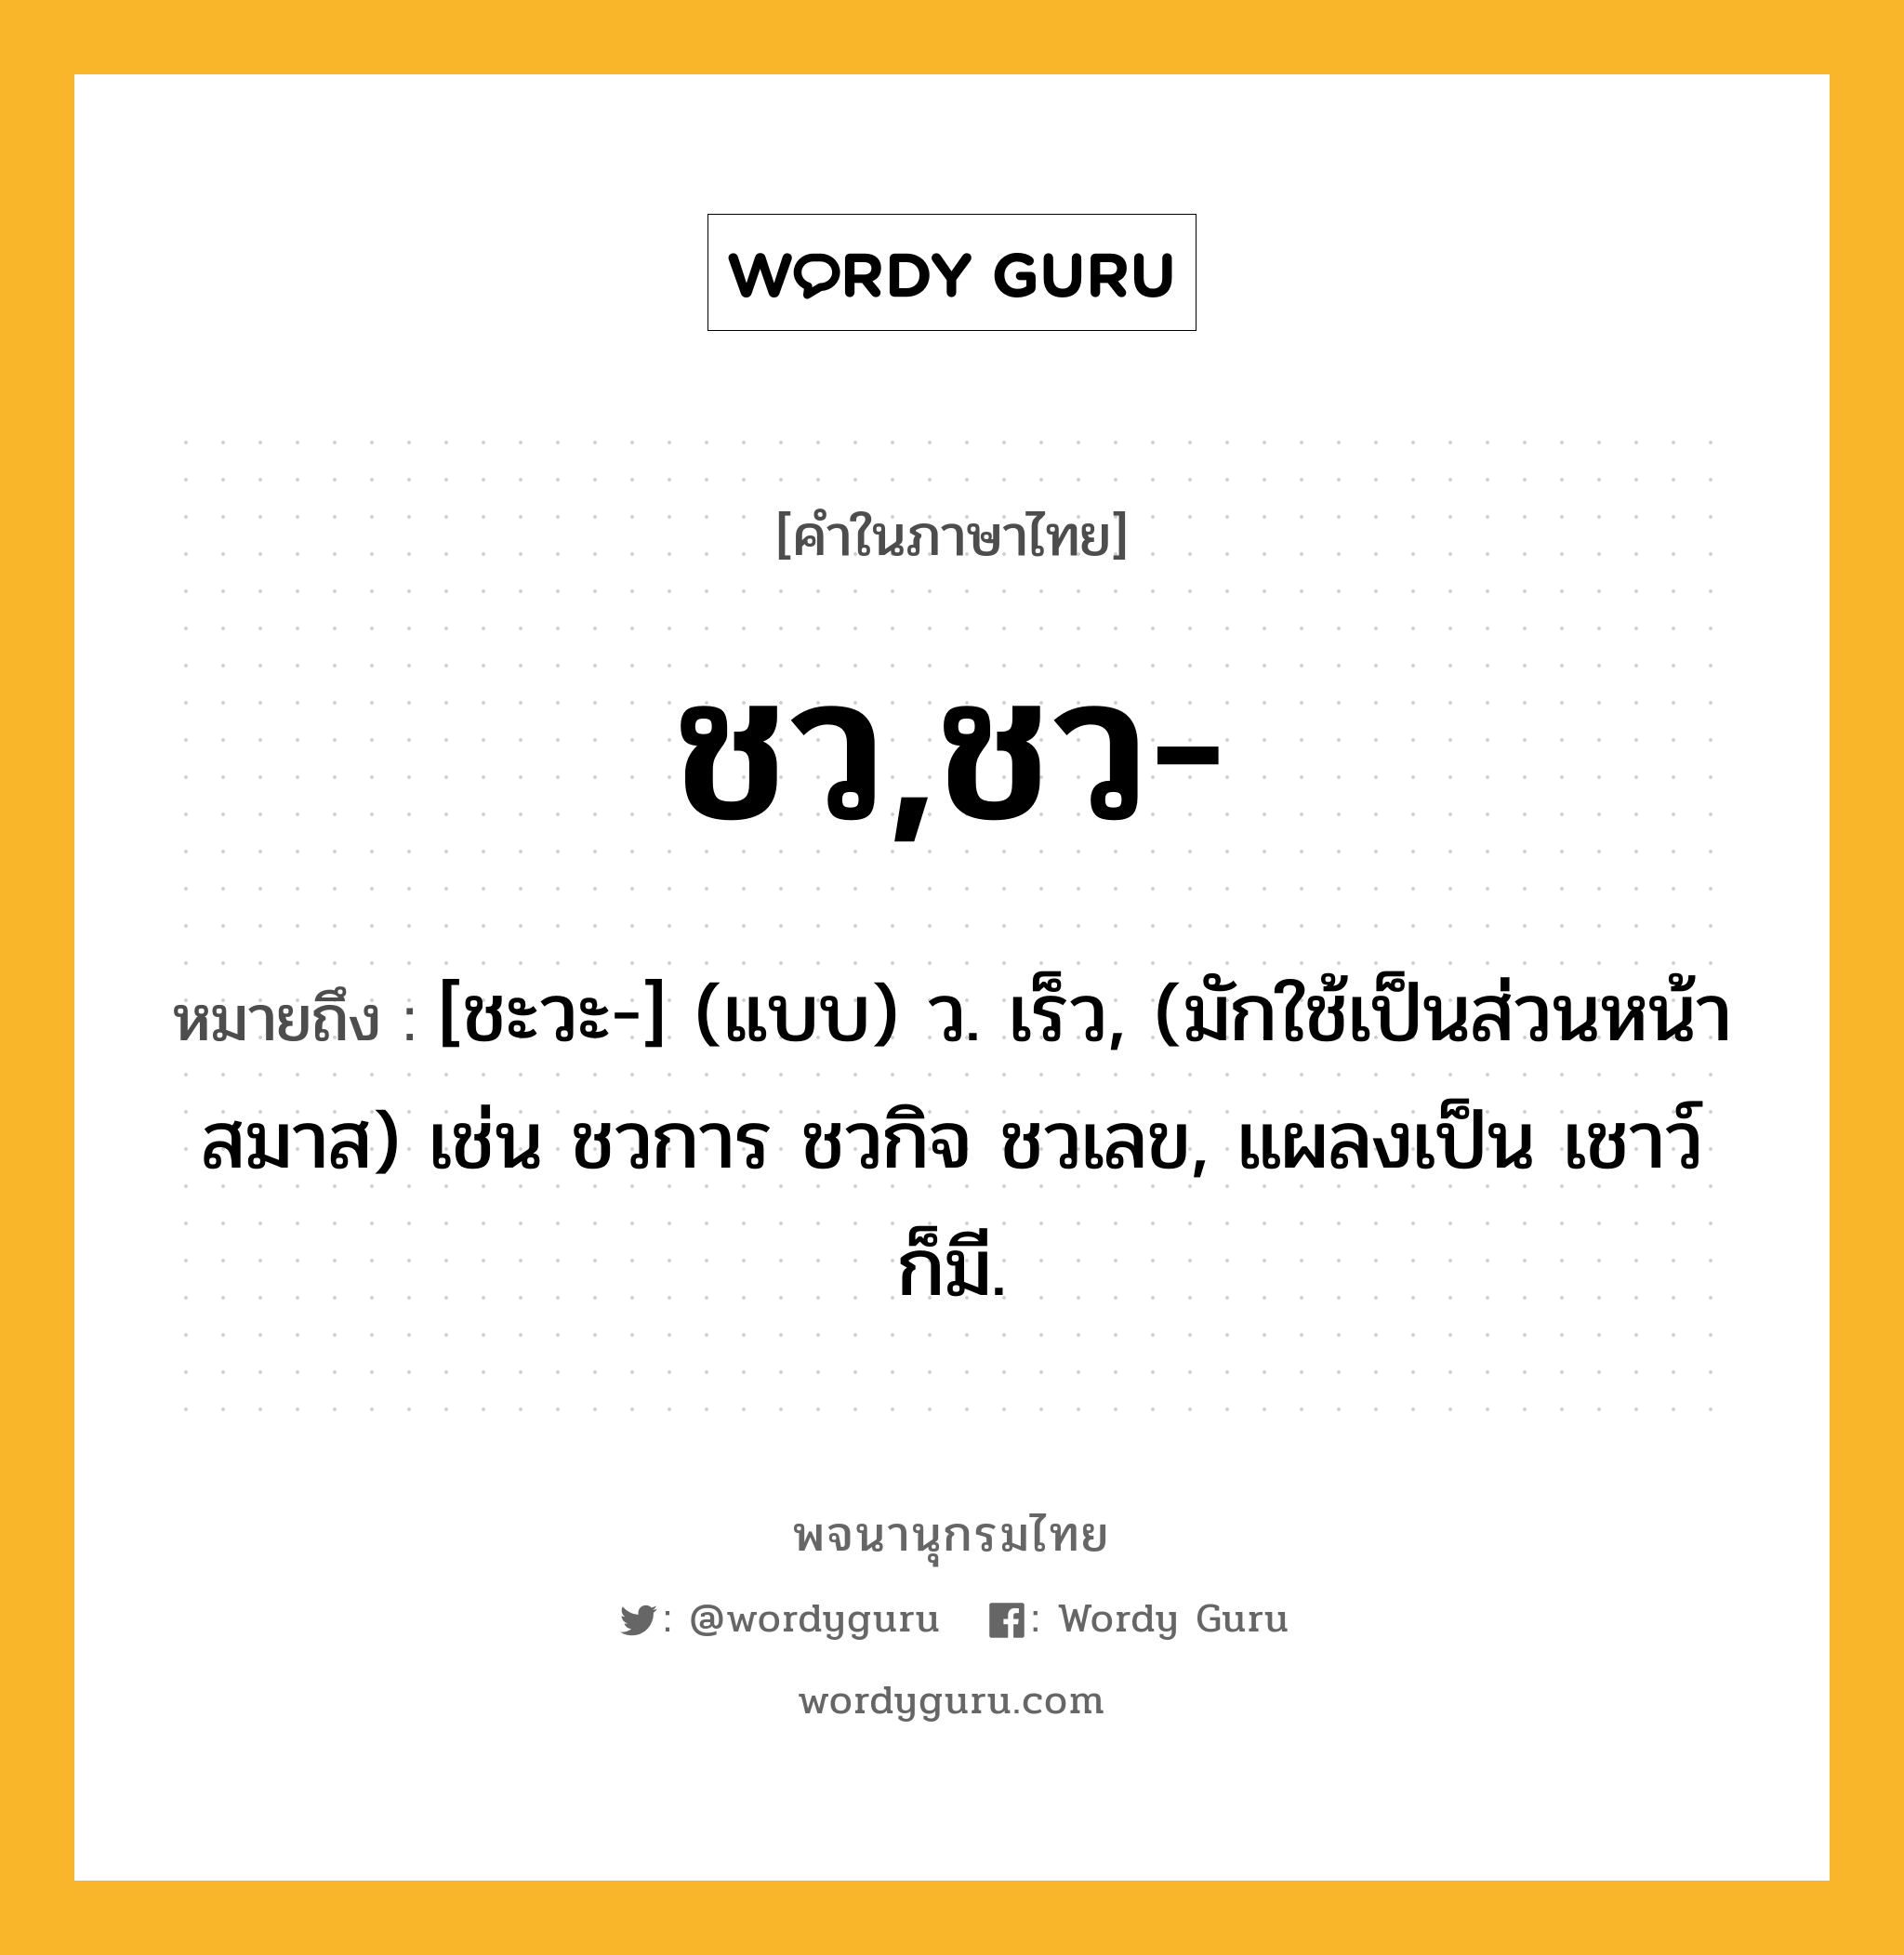 ชว,ชว- ความหมาย หมายถึงอะไร?, คำในภาษาไทย ชว,ชว- หมายถึง [ชะวะ-] (แบบ) ว. เร็ว, (มักใช้เป็นส่วนหน้าสมาส) เช่น ชวการ ชวกิจ ชวเลข, แผลงเป็น เชาว์ ก็มี.